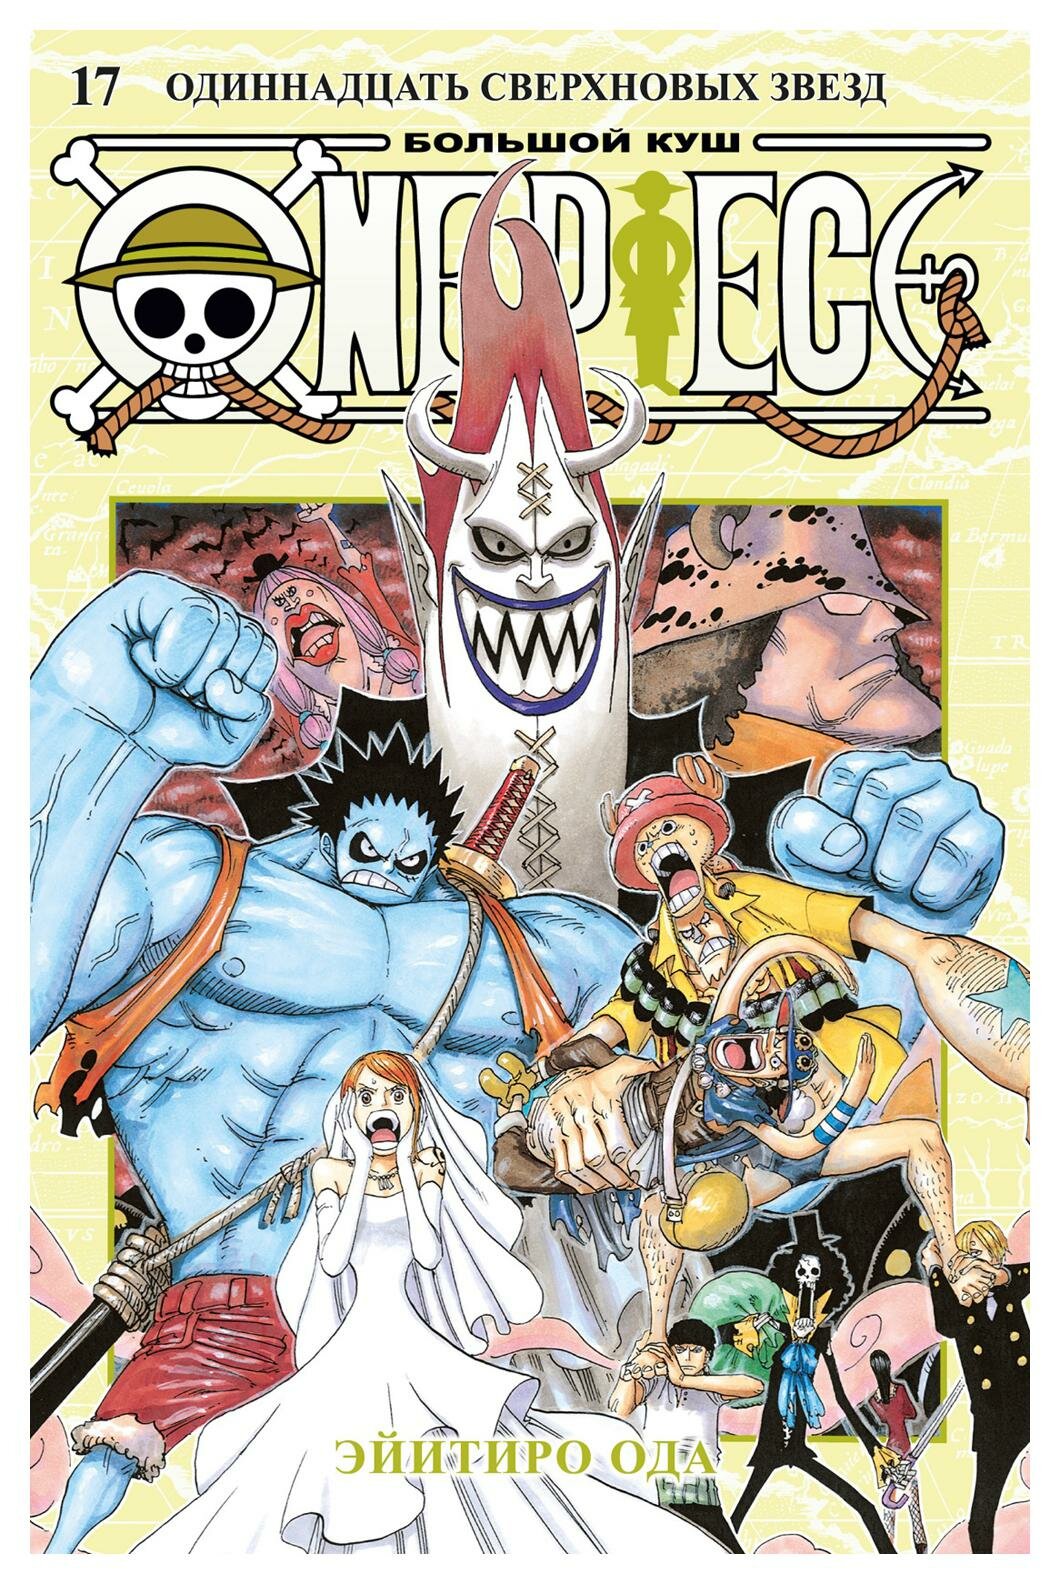 One Piece. Большой куш. 17. Одиннадцать Сверхновых Звезд: Кн. 49-51: манга. Ода Э. Азбука